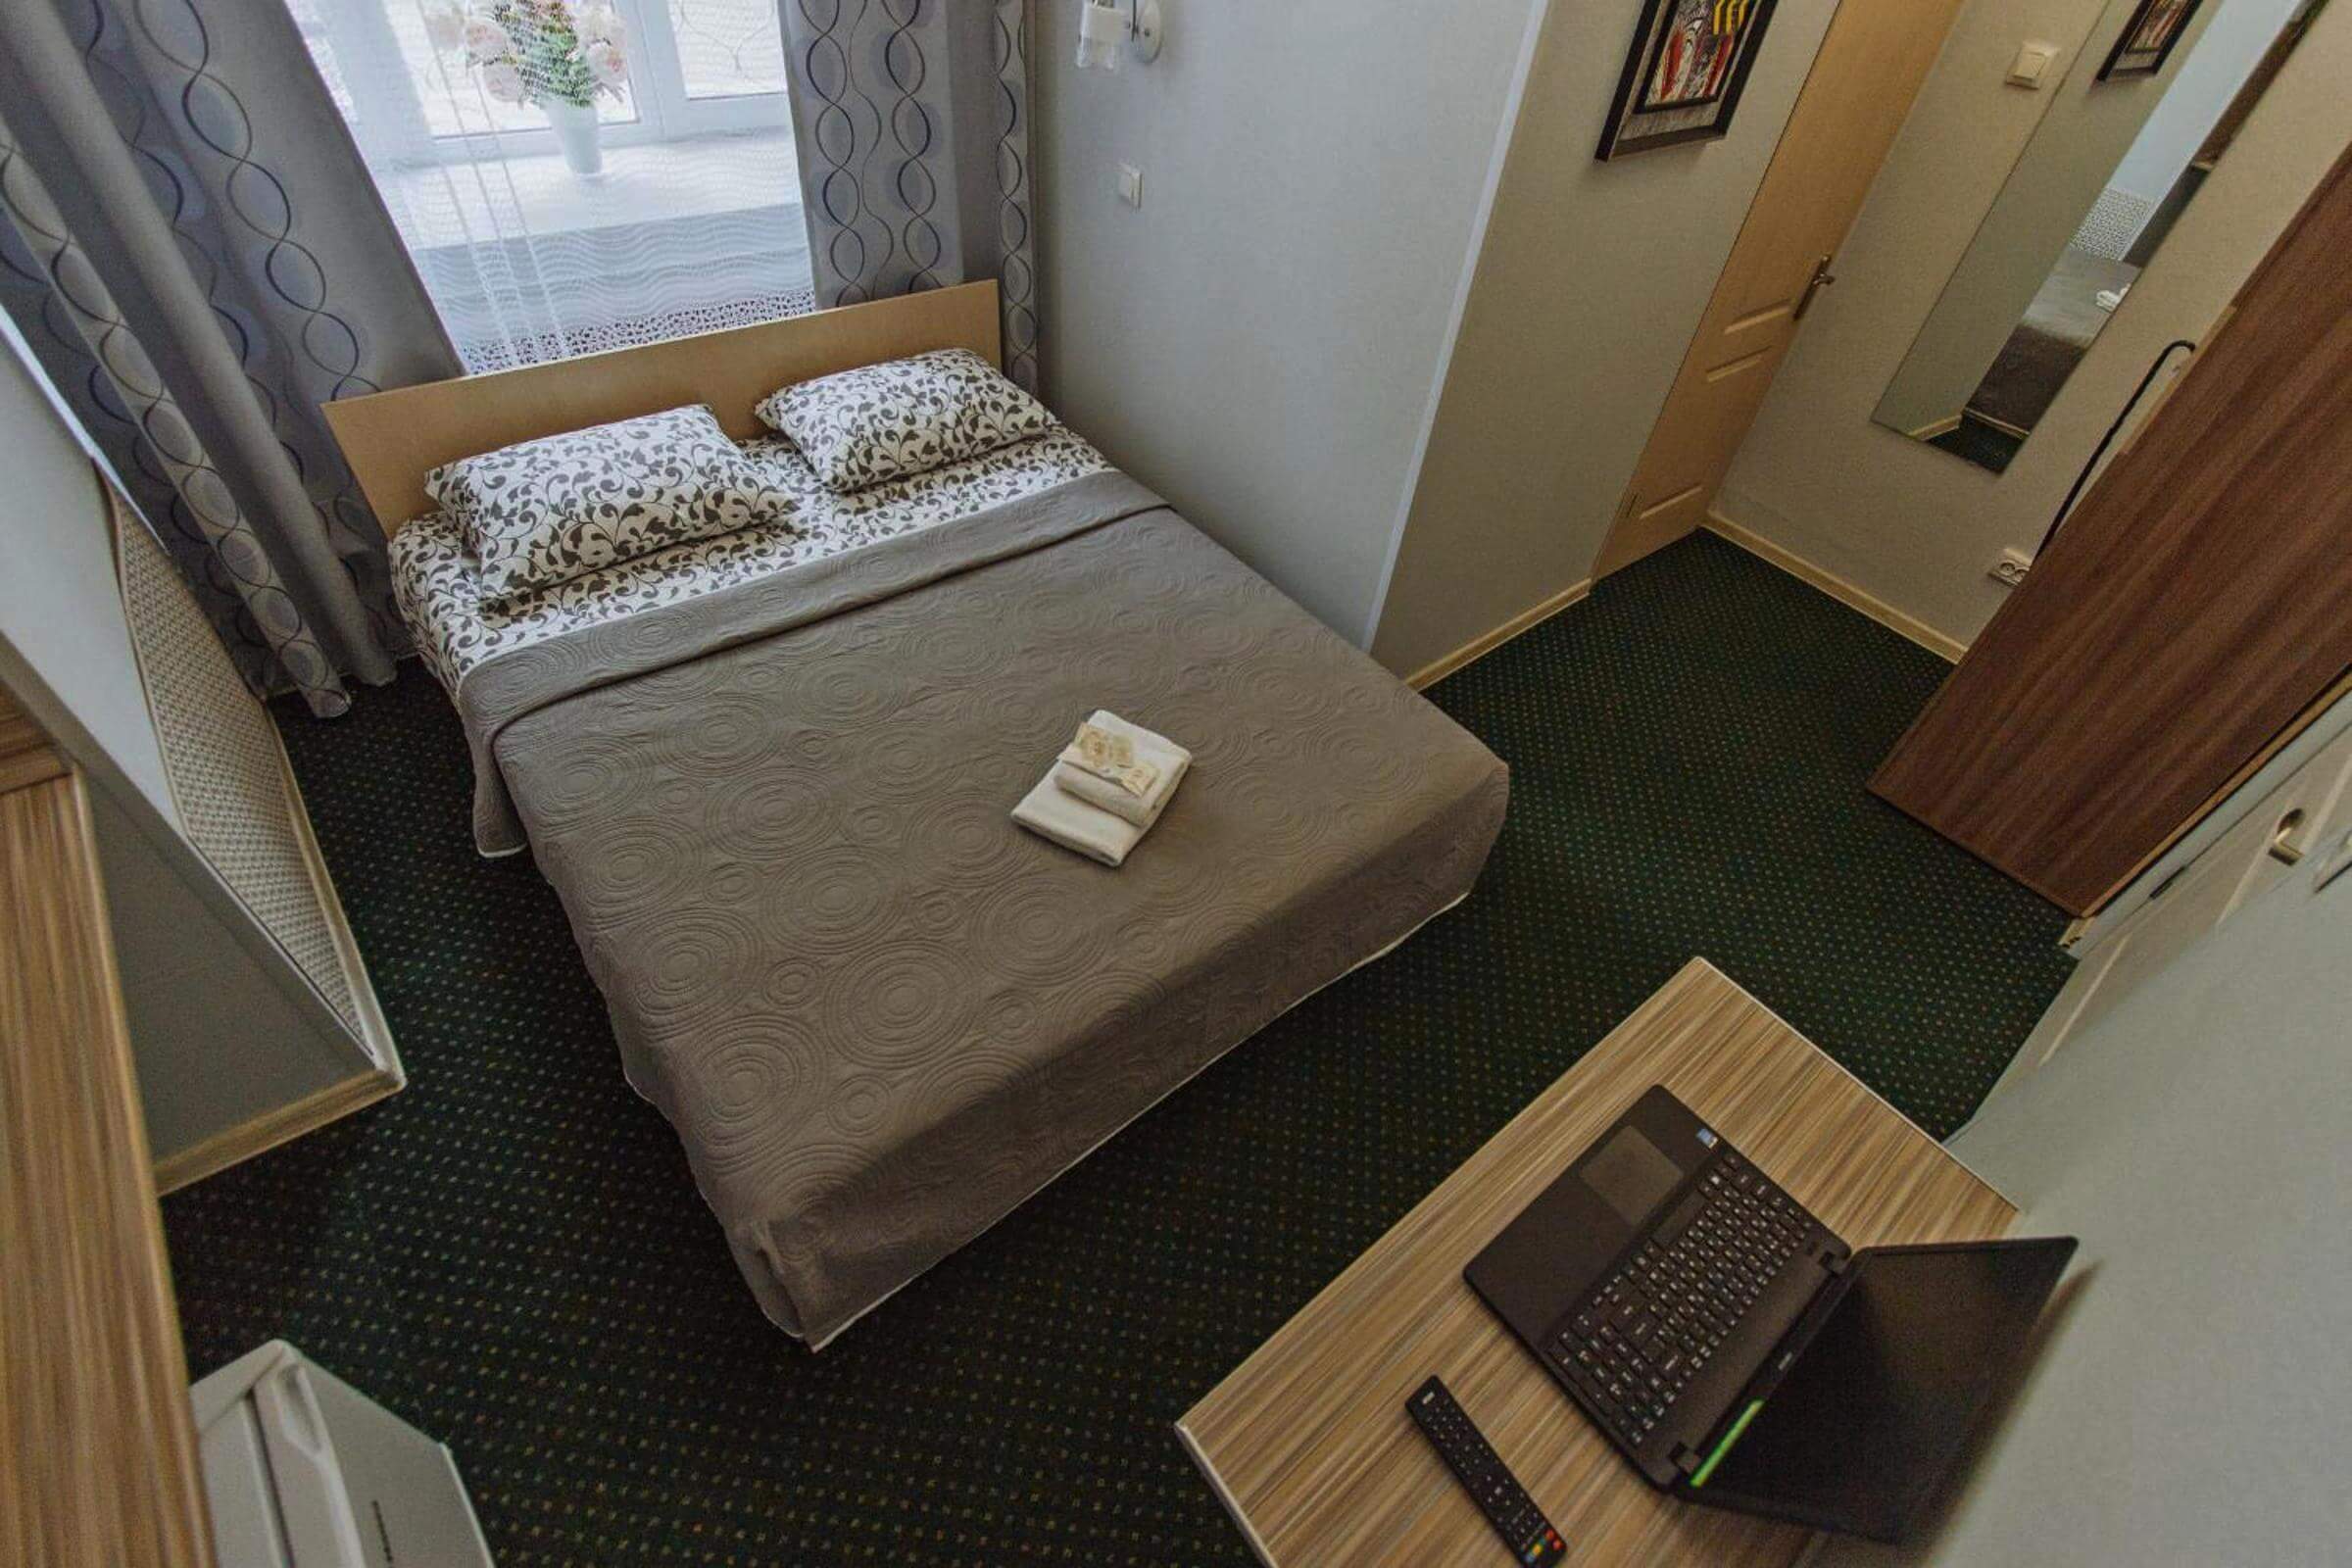 Вид на номер: кровать, стол с ноутбуком.